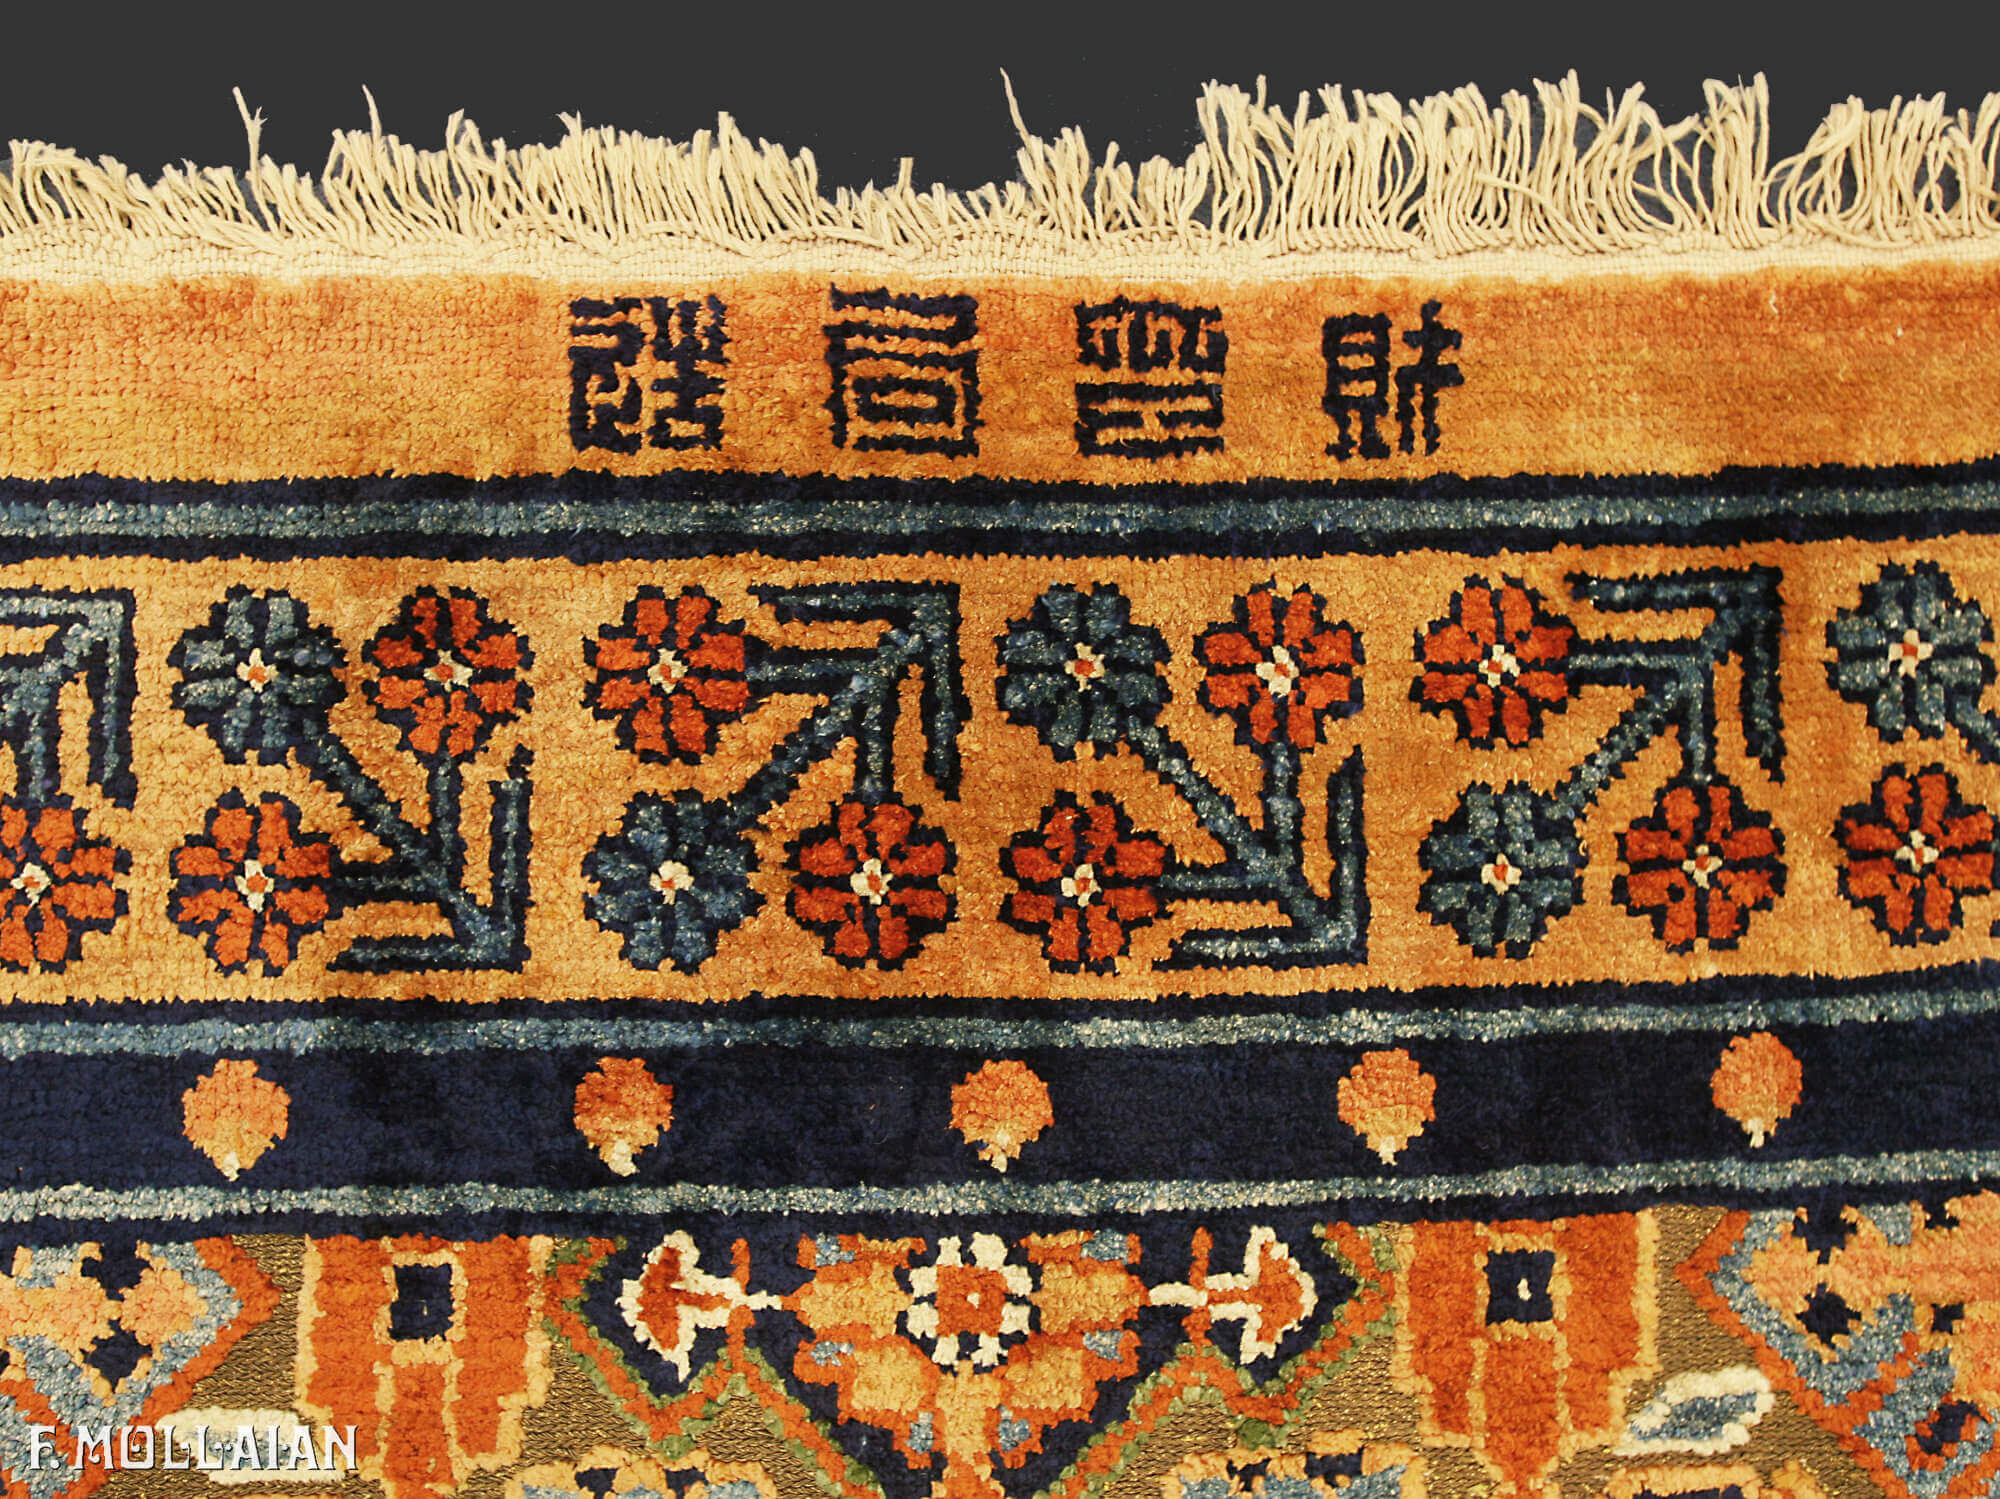 A rara Tapete Antigo del Palacio Imperial de Chinês de Seda&Metal n°:79466225